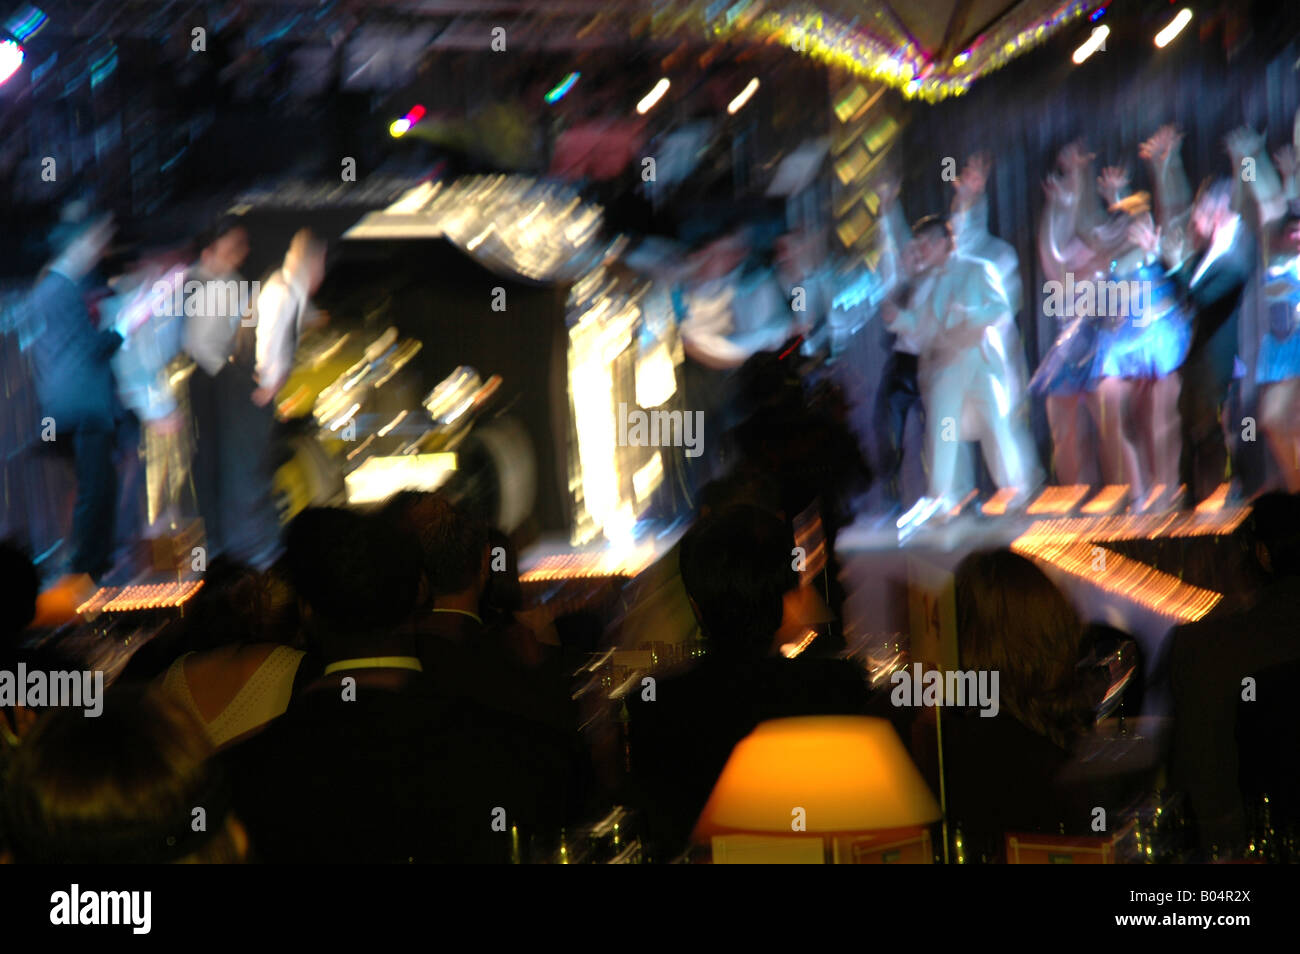 Feier party celebration Farbblitz colorflash Bewegungsunschärfe blurred motion Bühne stage arena Stock Photo